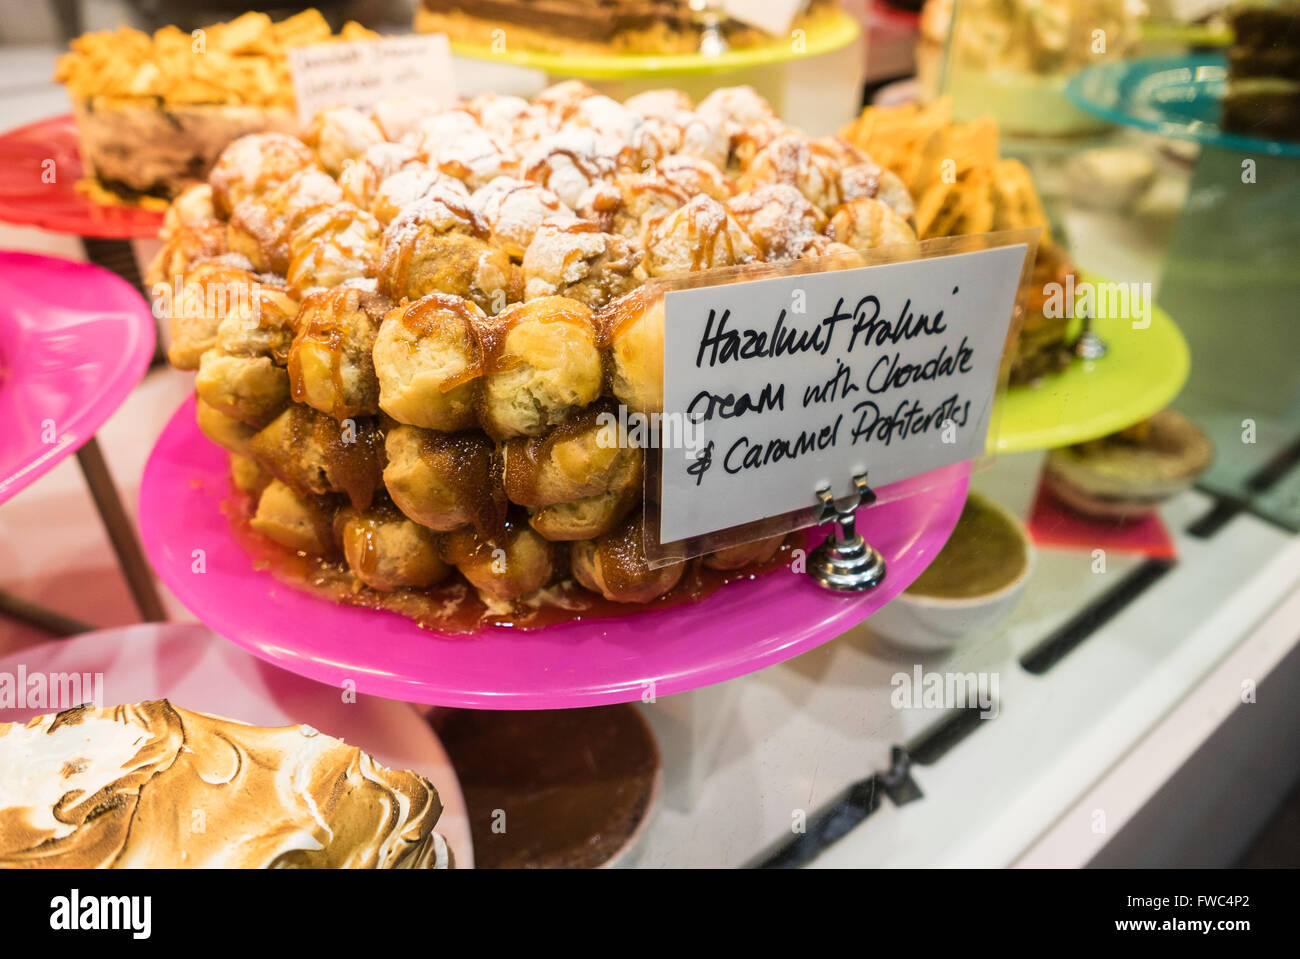 Haselnuss-Nougat-Creme mit Karamell Profiteroles Dessert auf dem Display in einem restaurant Stockfoto